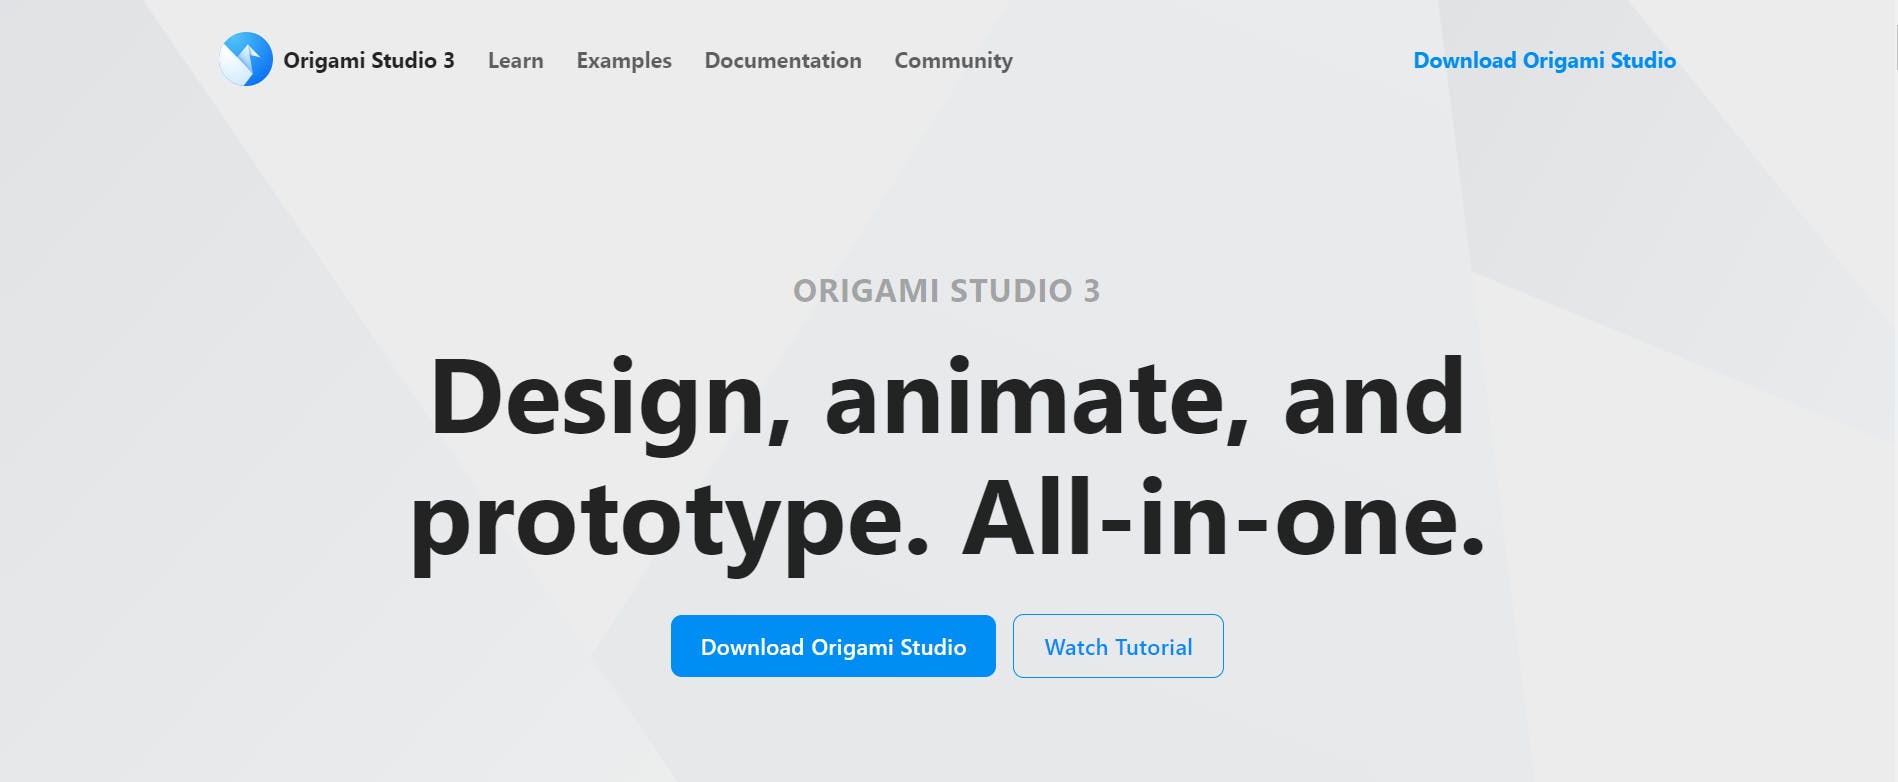 Origami-Studio-—-Origami-Studio-3.png